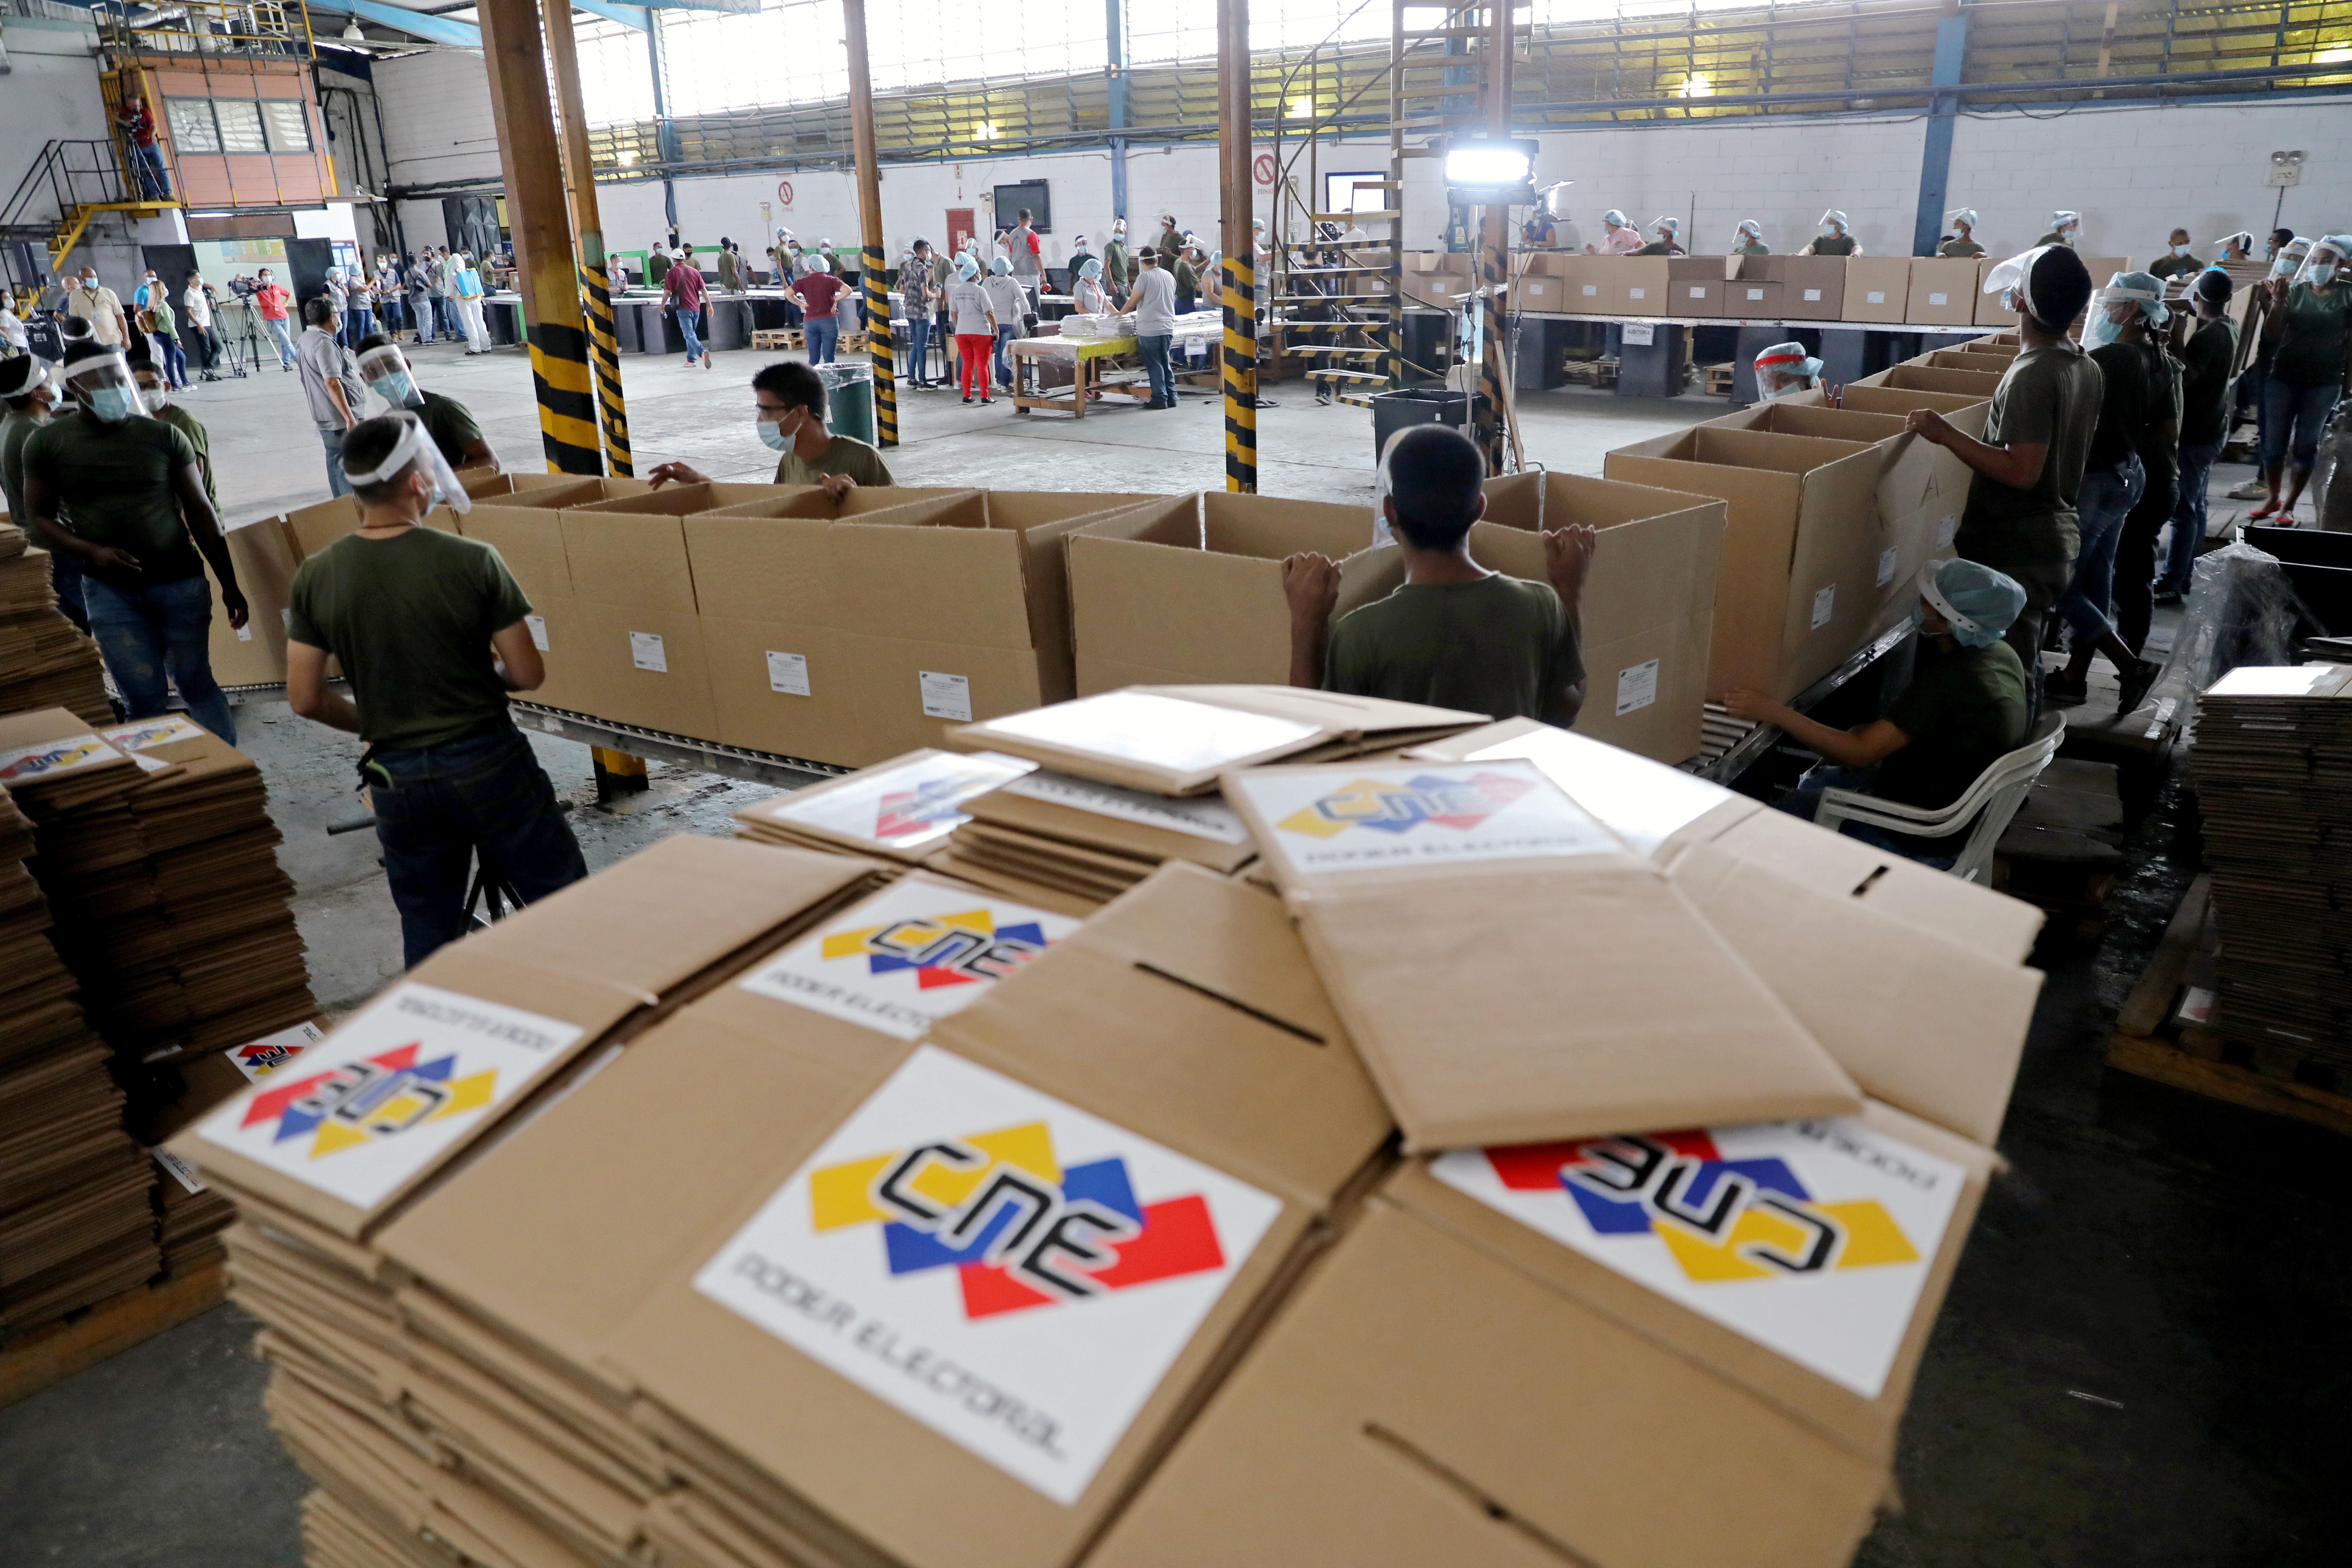 Chavismo anunció el despliegue de material electoral “a los sitios inhóspitos” del país